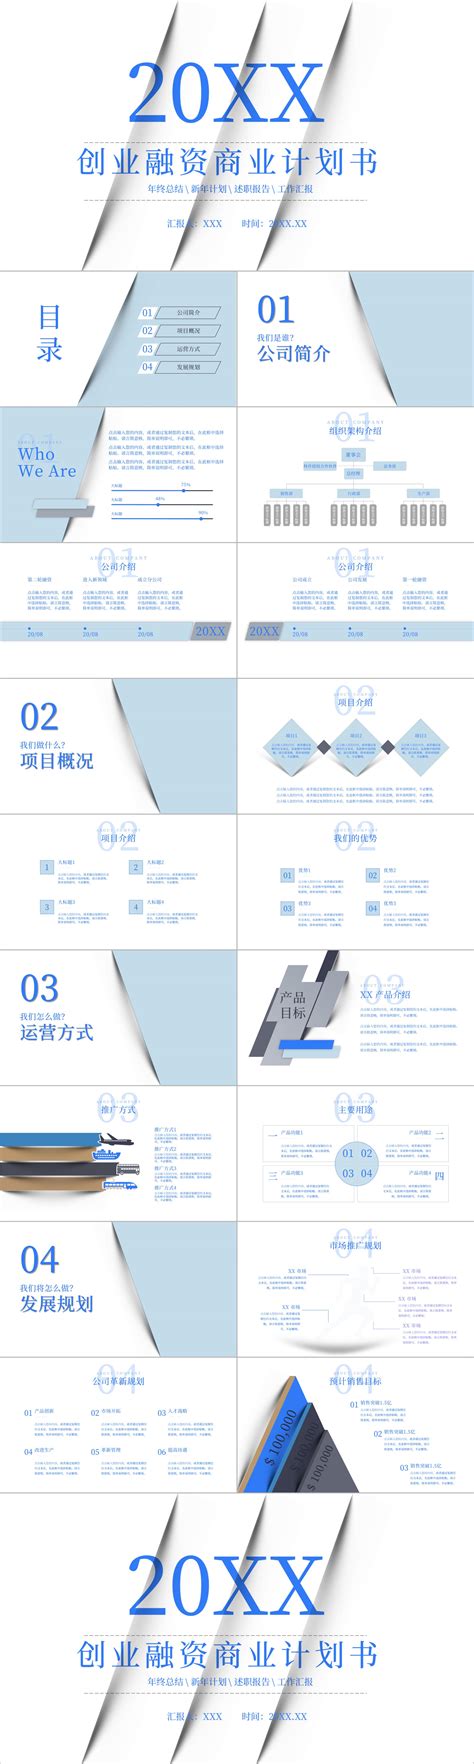 蓝色PPT模板素材-蓝色PPT模板模板-蓝色PPT模板图片免费下载-设图网